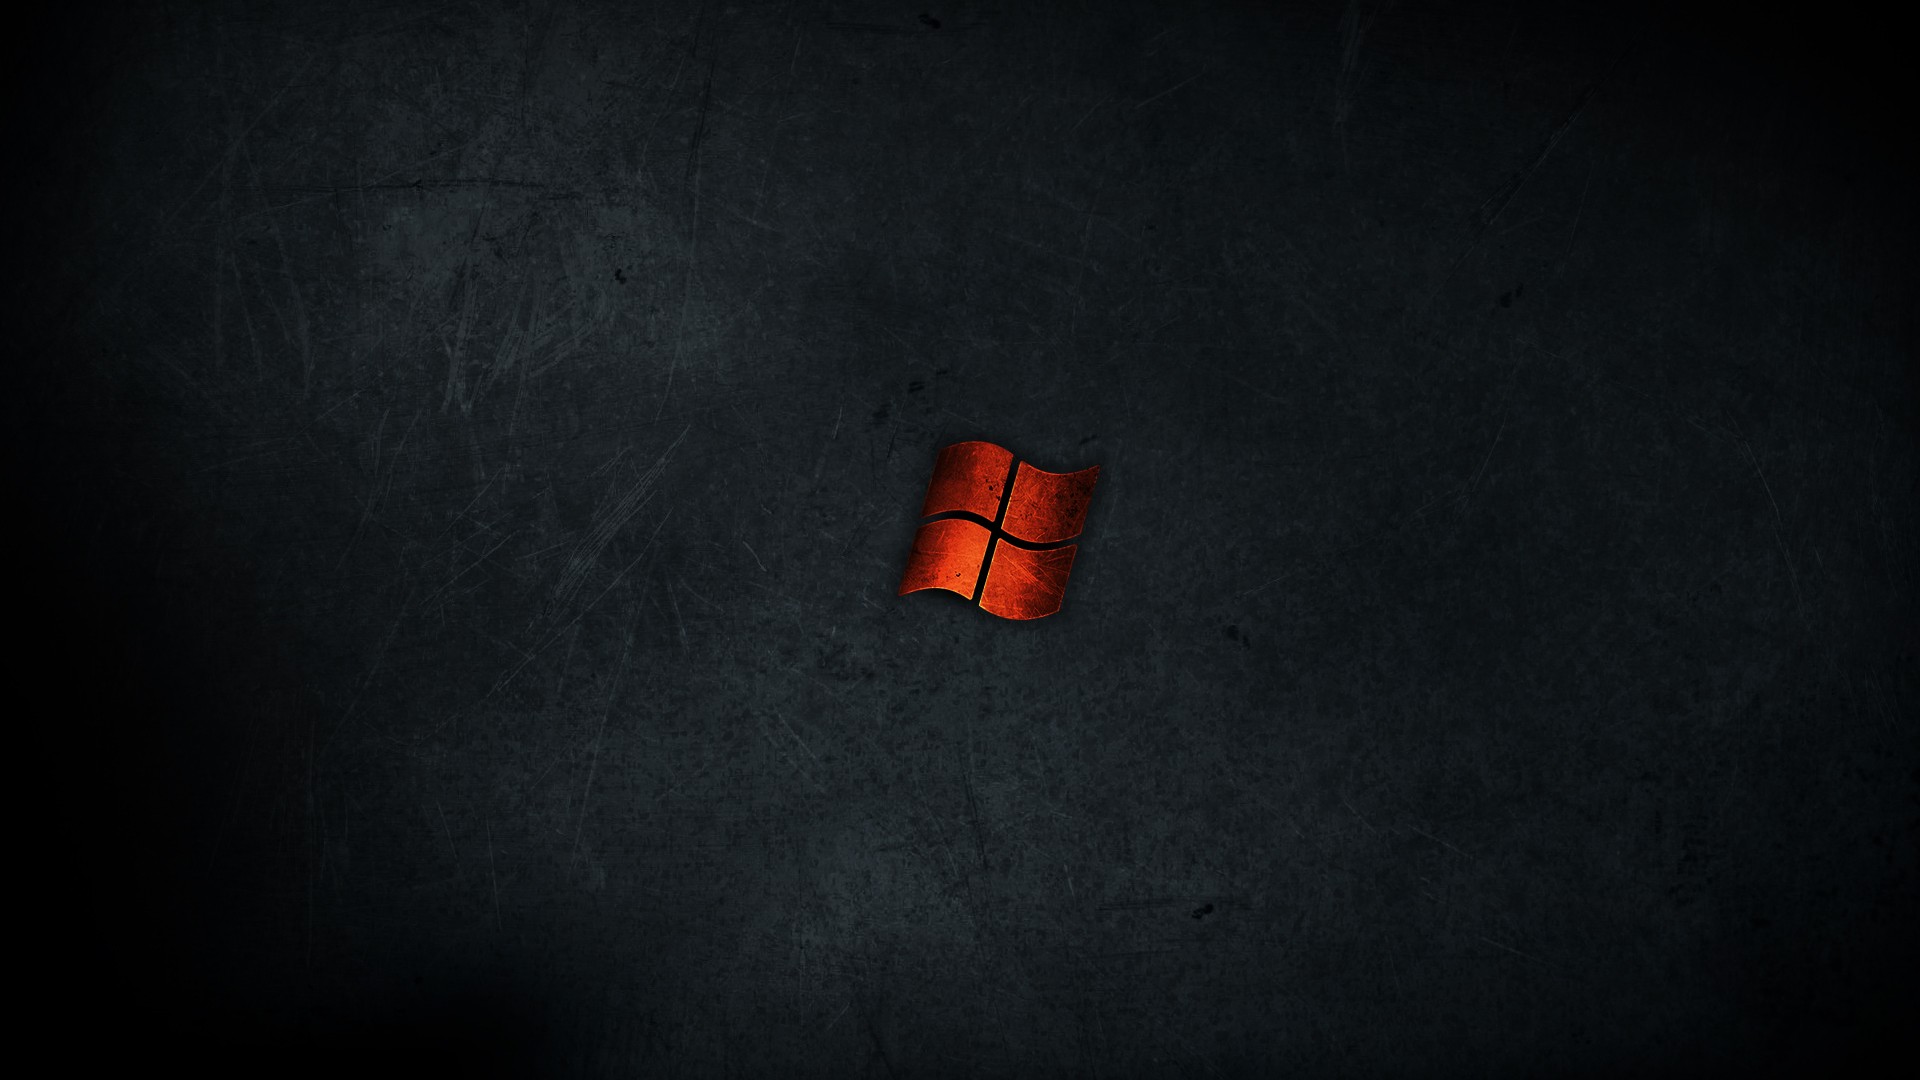 General 1920x1080 dark Microsoft Windows texture logo DeviantArt simple background